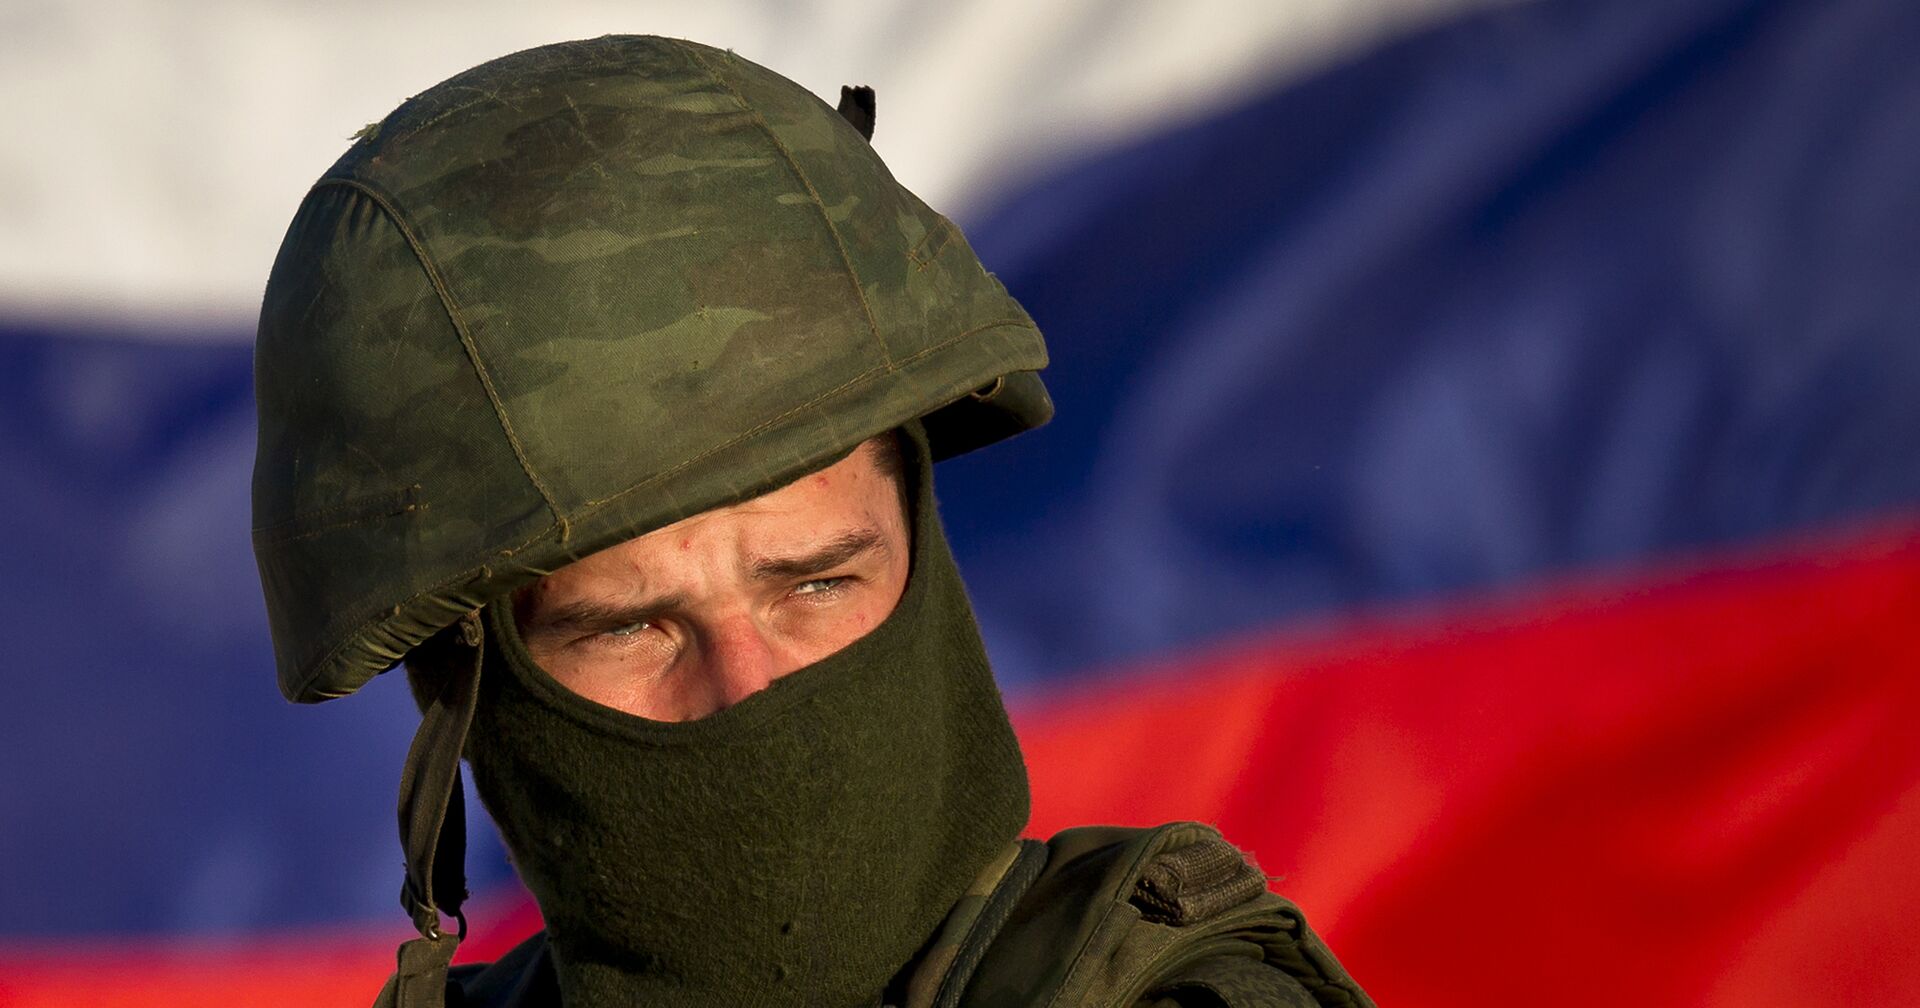 Российский солдат на украинской военной базе в Перевальном, Крым, 15 марта 2014 года - ИноСМИ, 1920, 08.09.2021